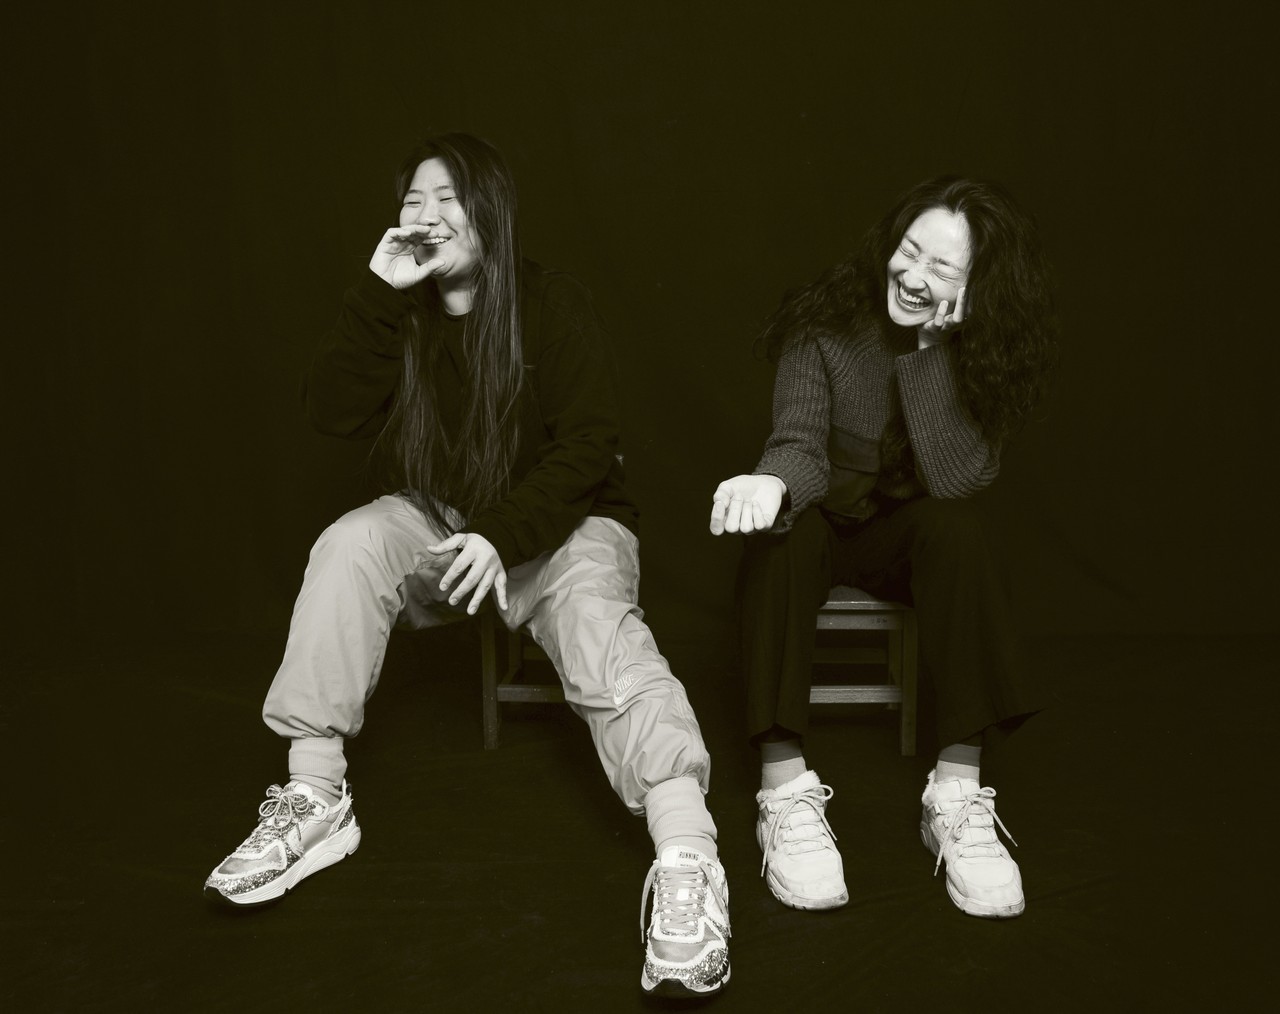 전시작가 김안나(왼쪽)와 현대무용가 박민영이 환하게 웃고 있다. (스튜디오 필로 제공)